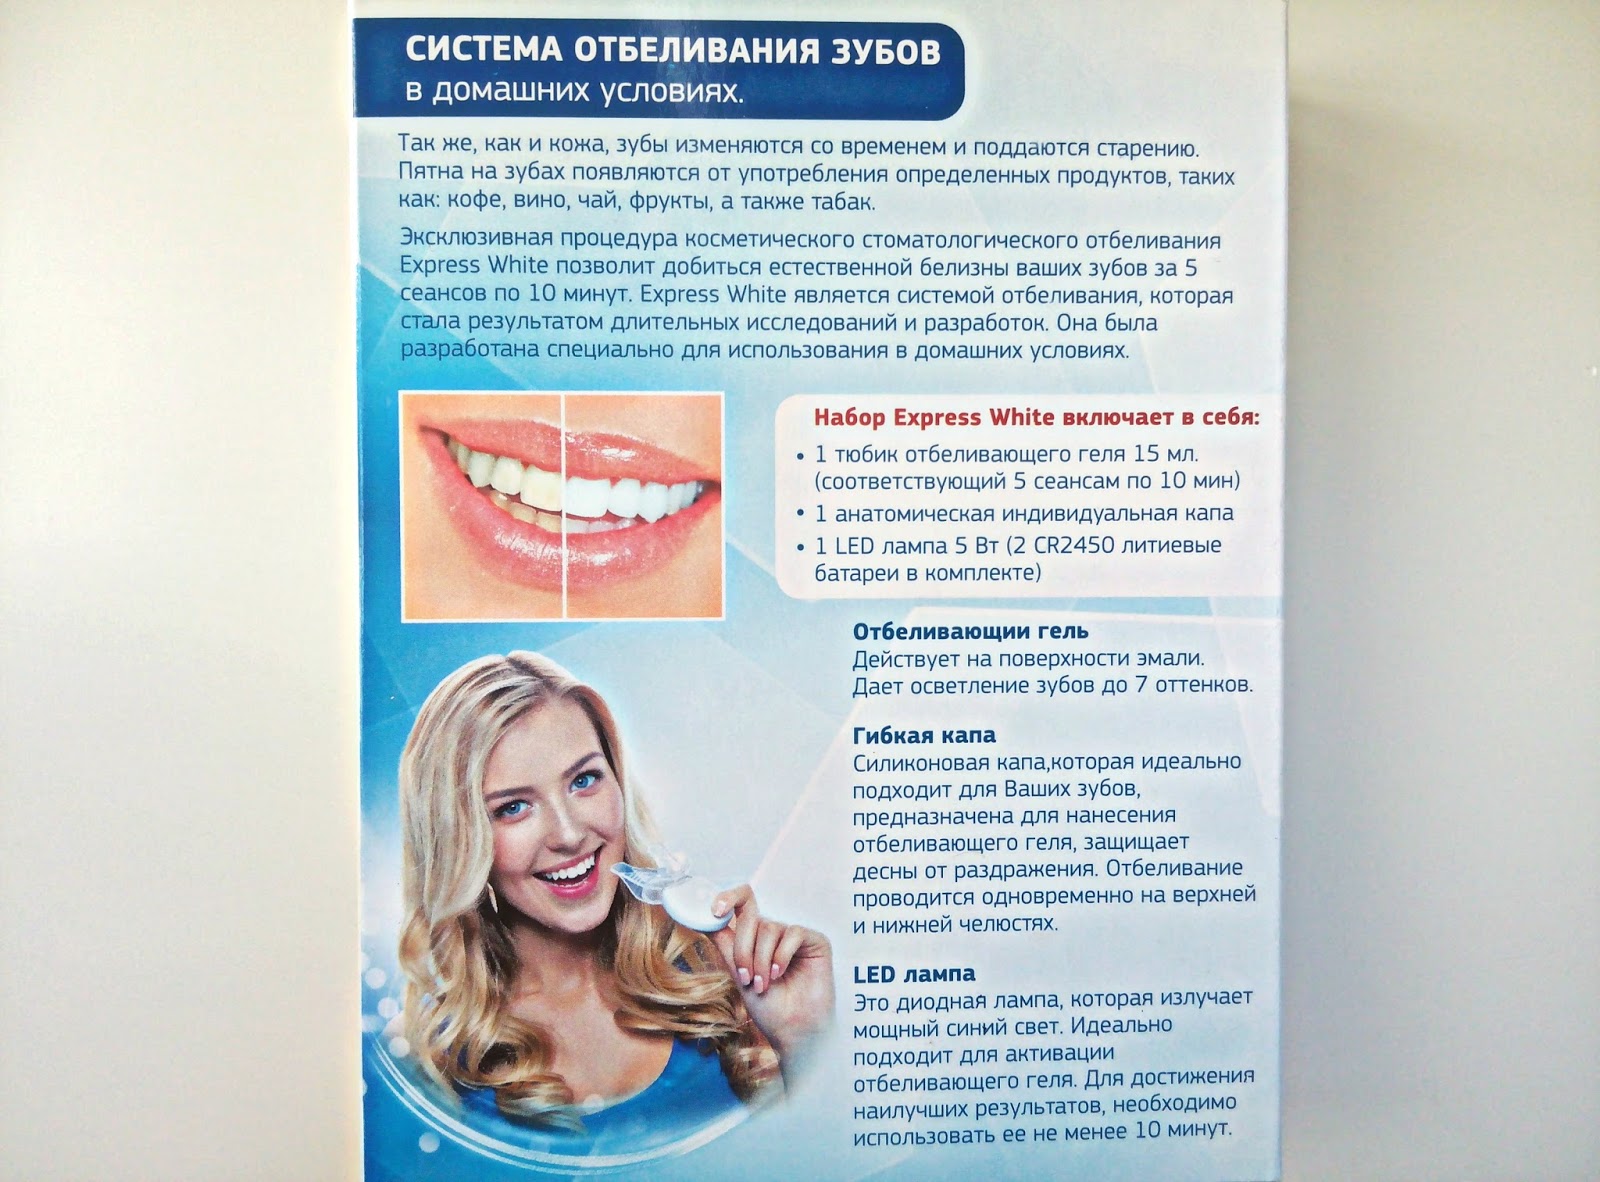 Продукты после отбеливания зубов. Отбеливание зубов. Отбеливание зубов памятка. Система домашнего отбеливания зубов. Памятка по отбеливанию зубов.